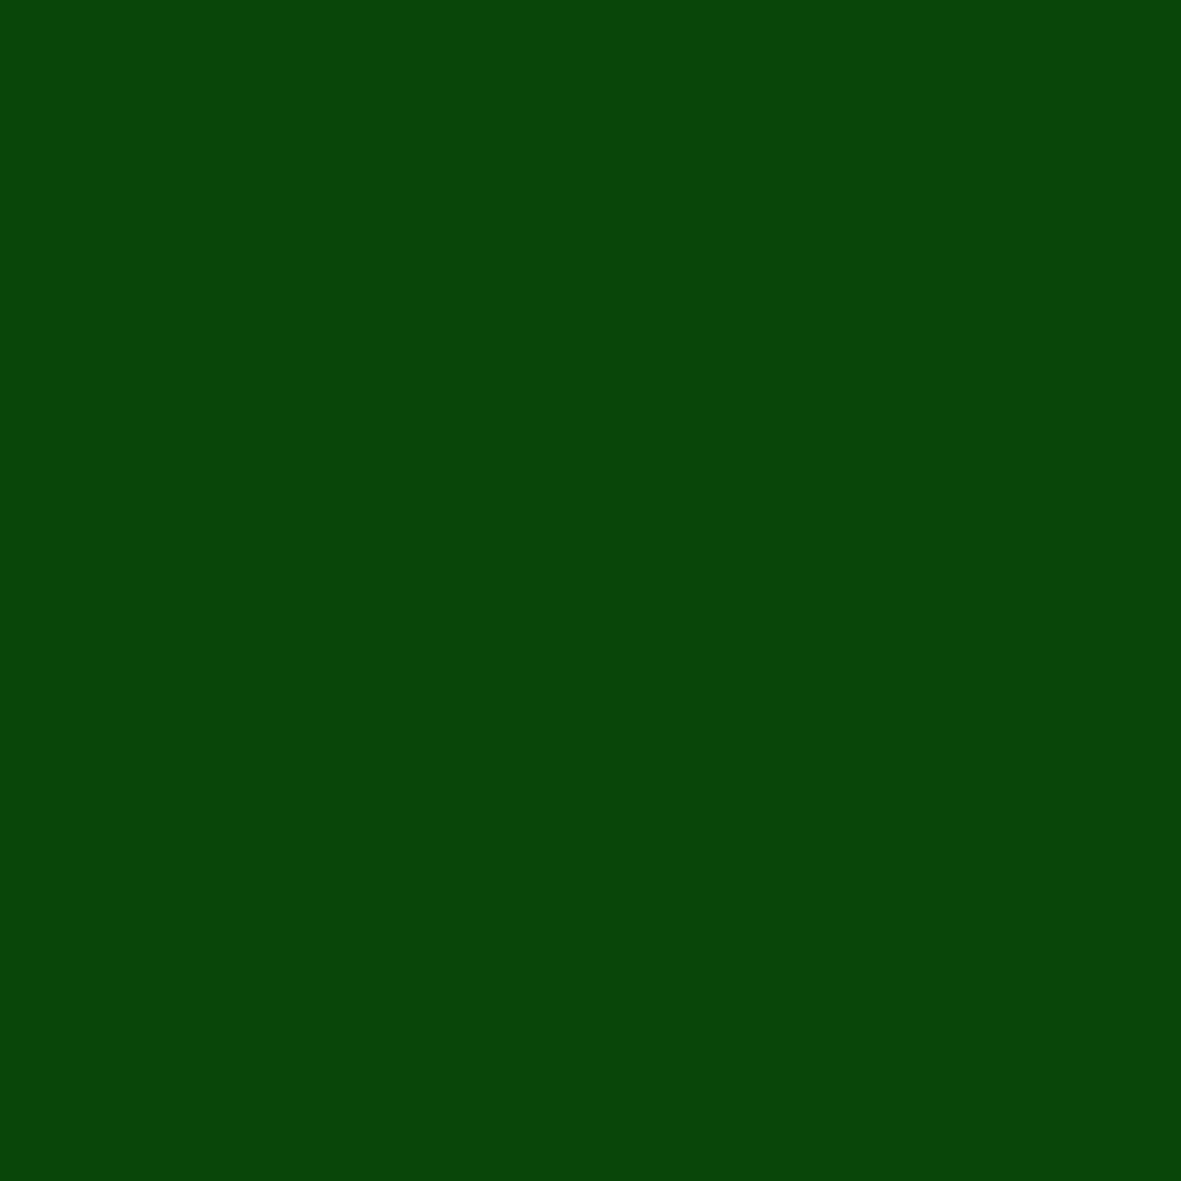 Gravotherm Folienfarbe Dunkelgrün für Texte, Logos und Muster 